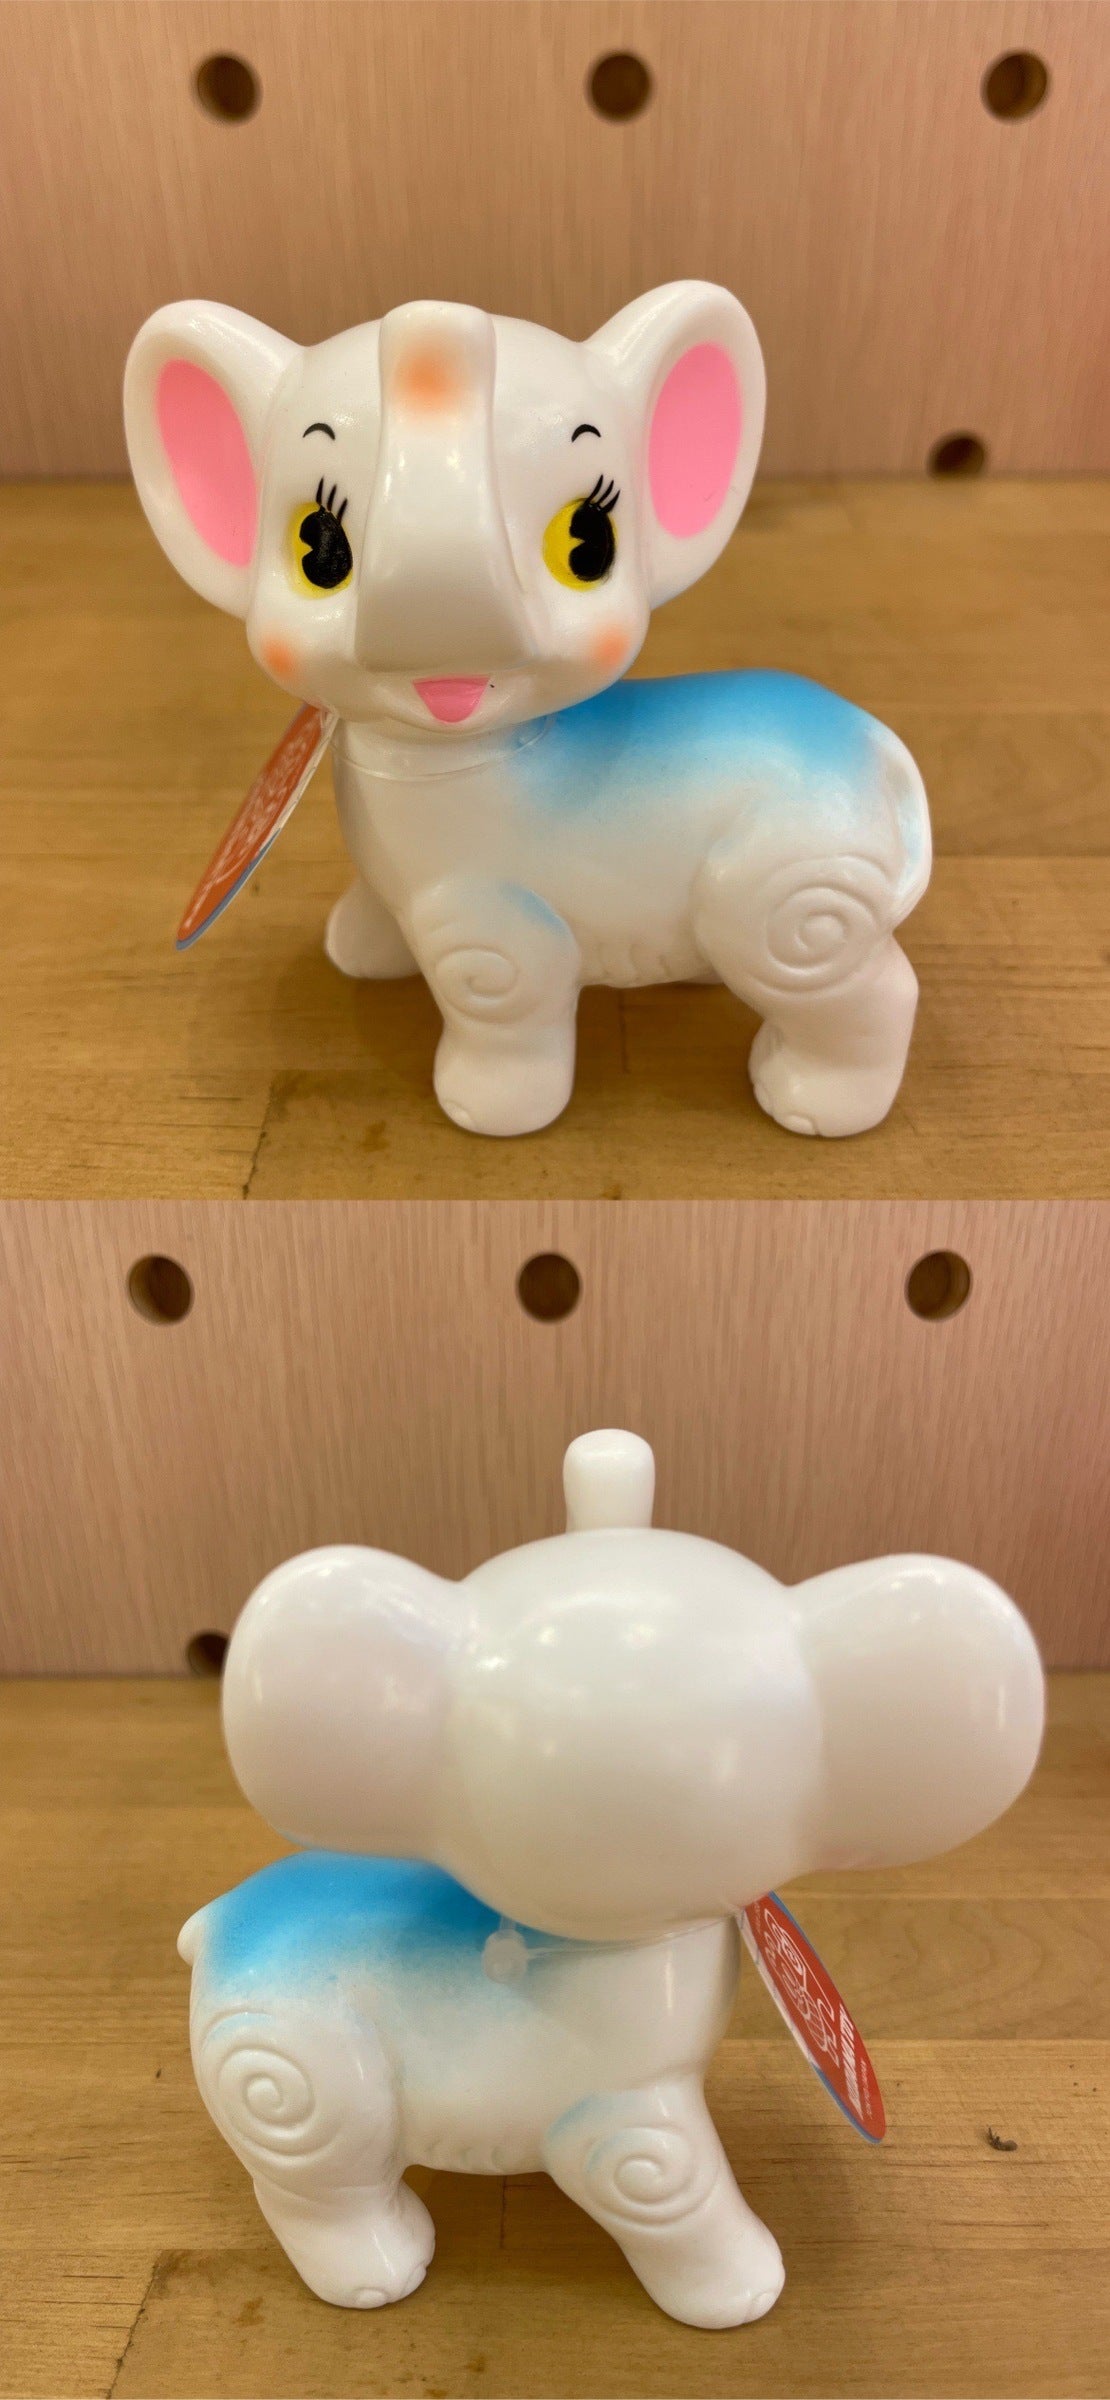 Kodama Toy Elephant - KOD-51